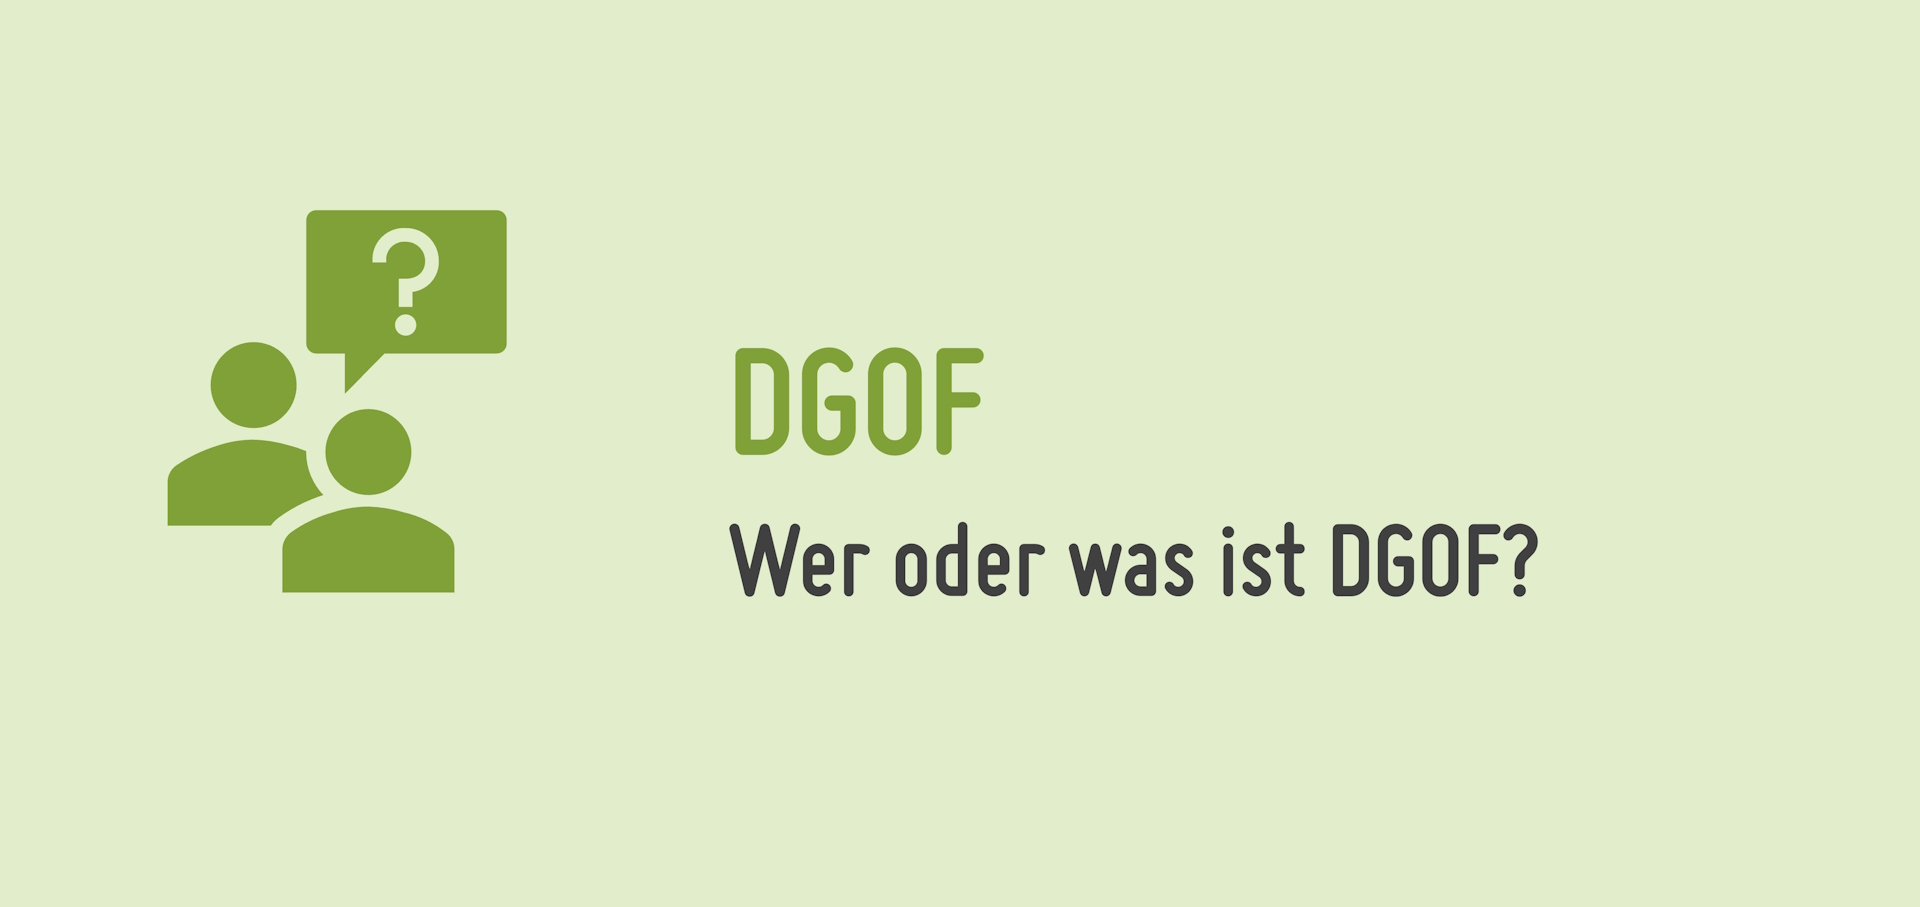 Wer oder was ist DGOF?